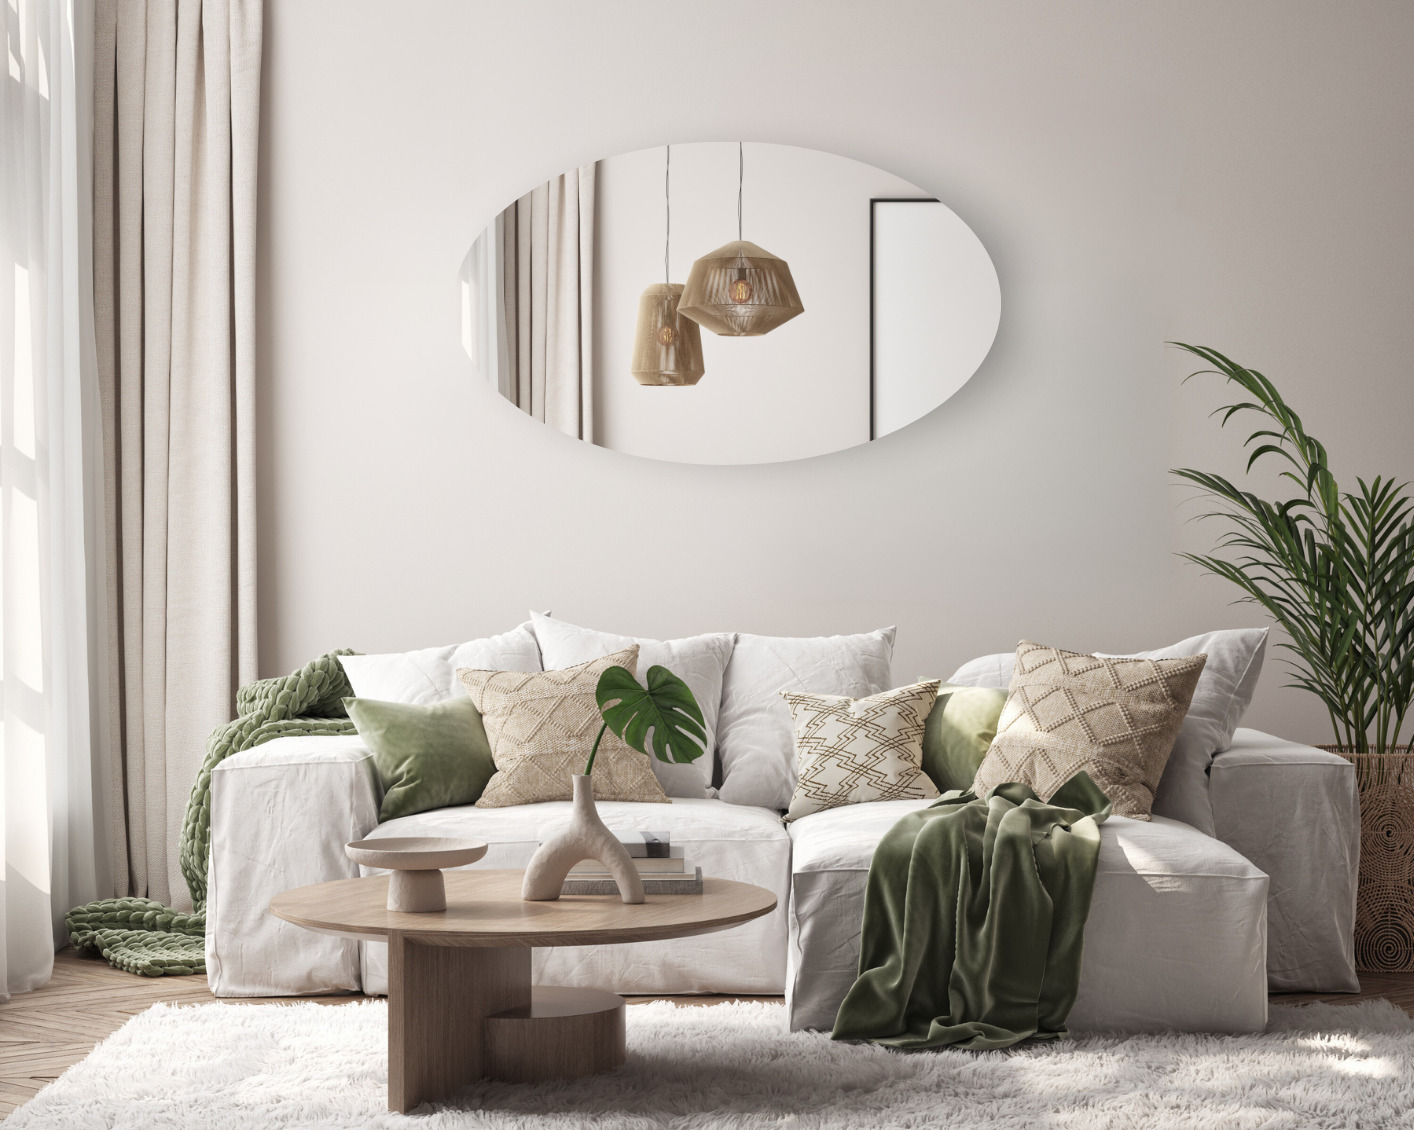 Ovale spiegel in de woonkamer - verzilverd